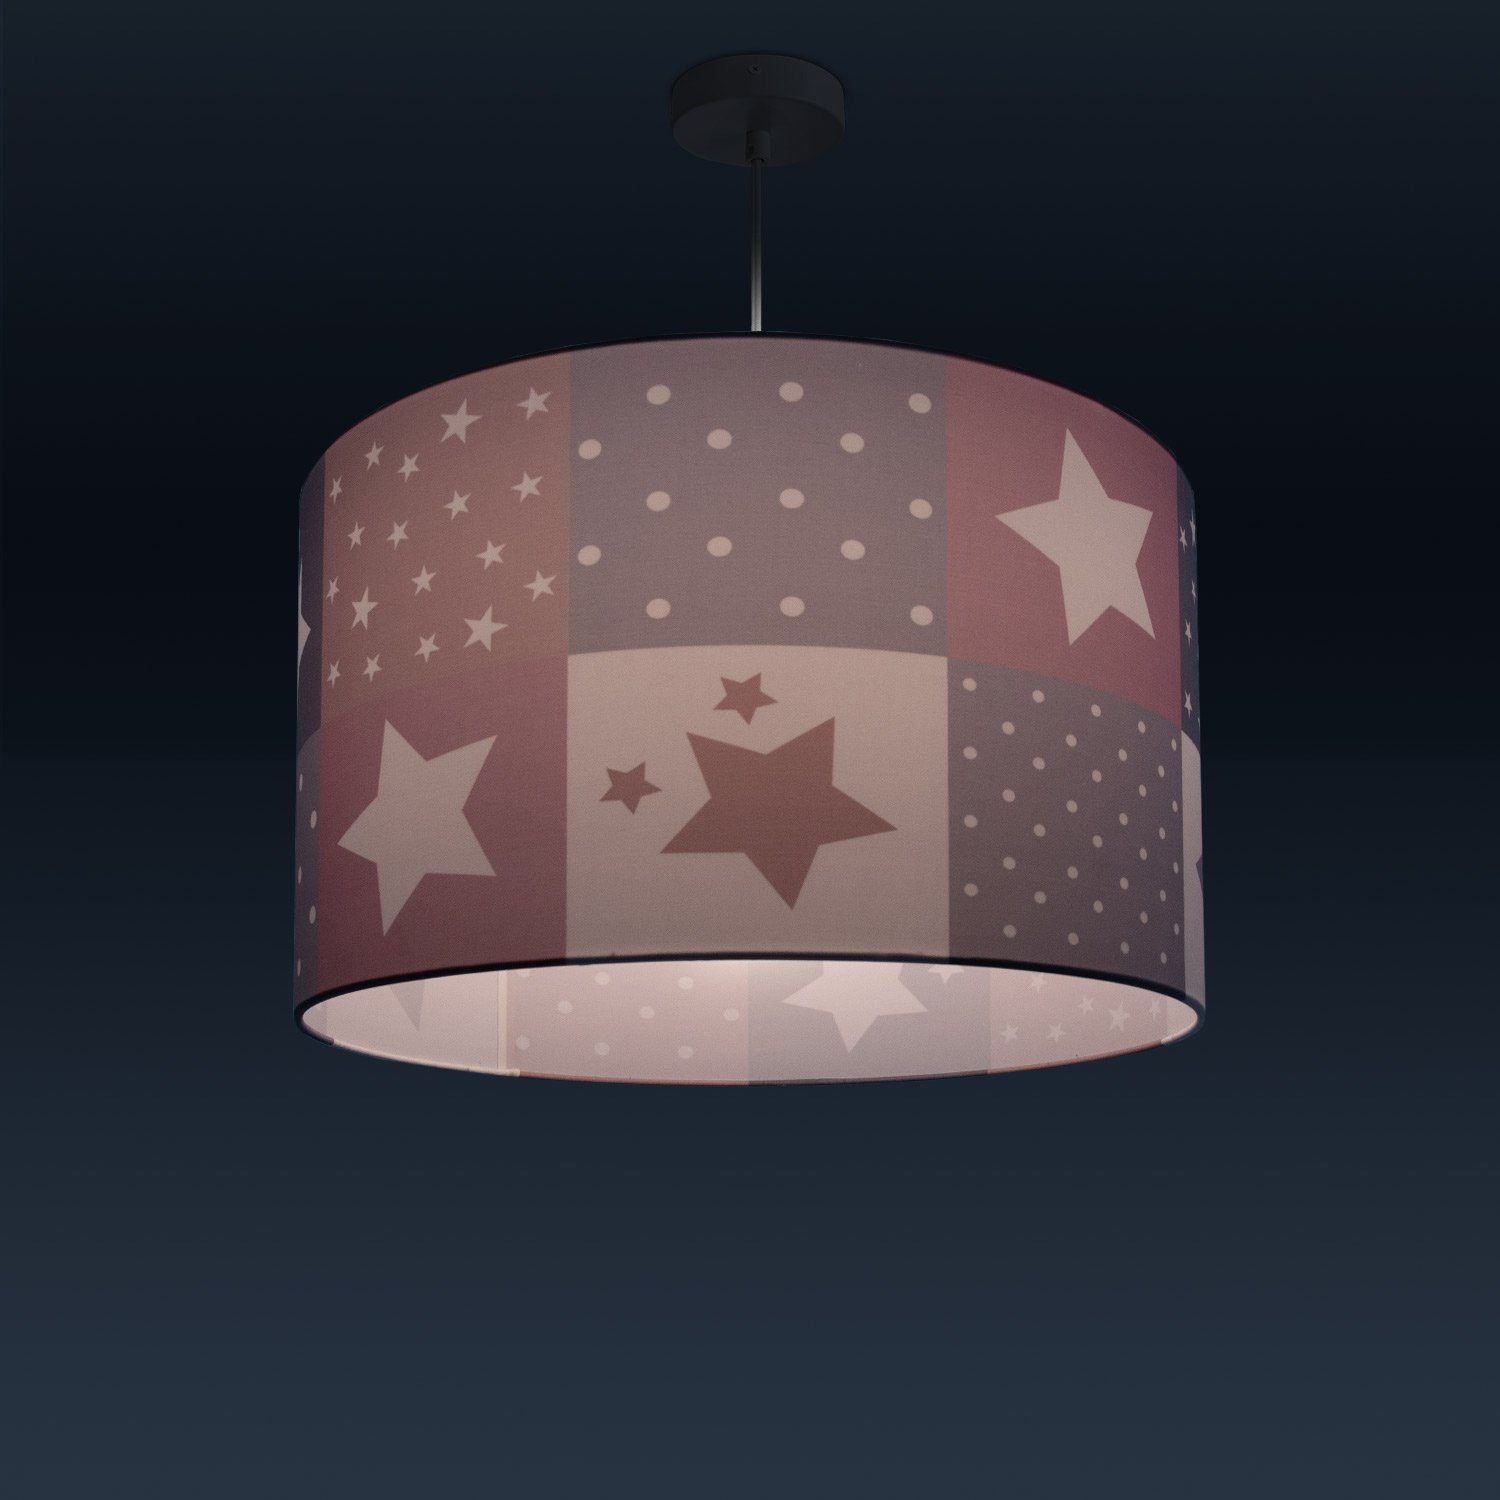 LED Motiv Deckenlampe Cosmo Kinderlampe 345, ohne E27 Pendelleuchte Leuchtmittel, Lampe Home Paco Kinderzimmer Sternen